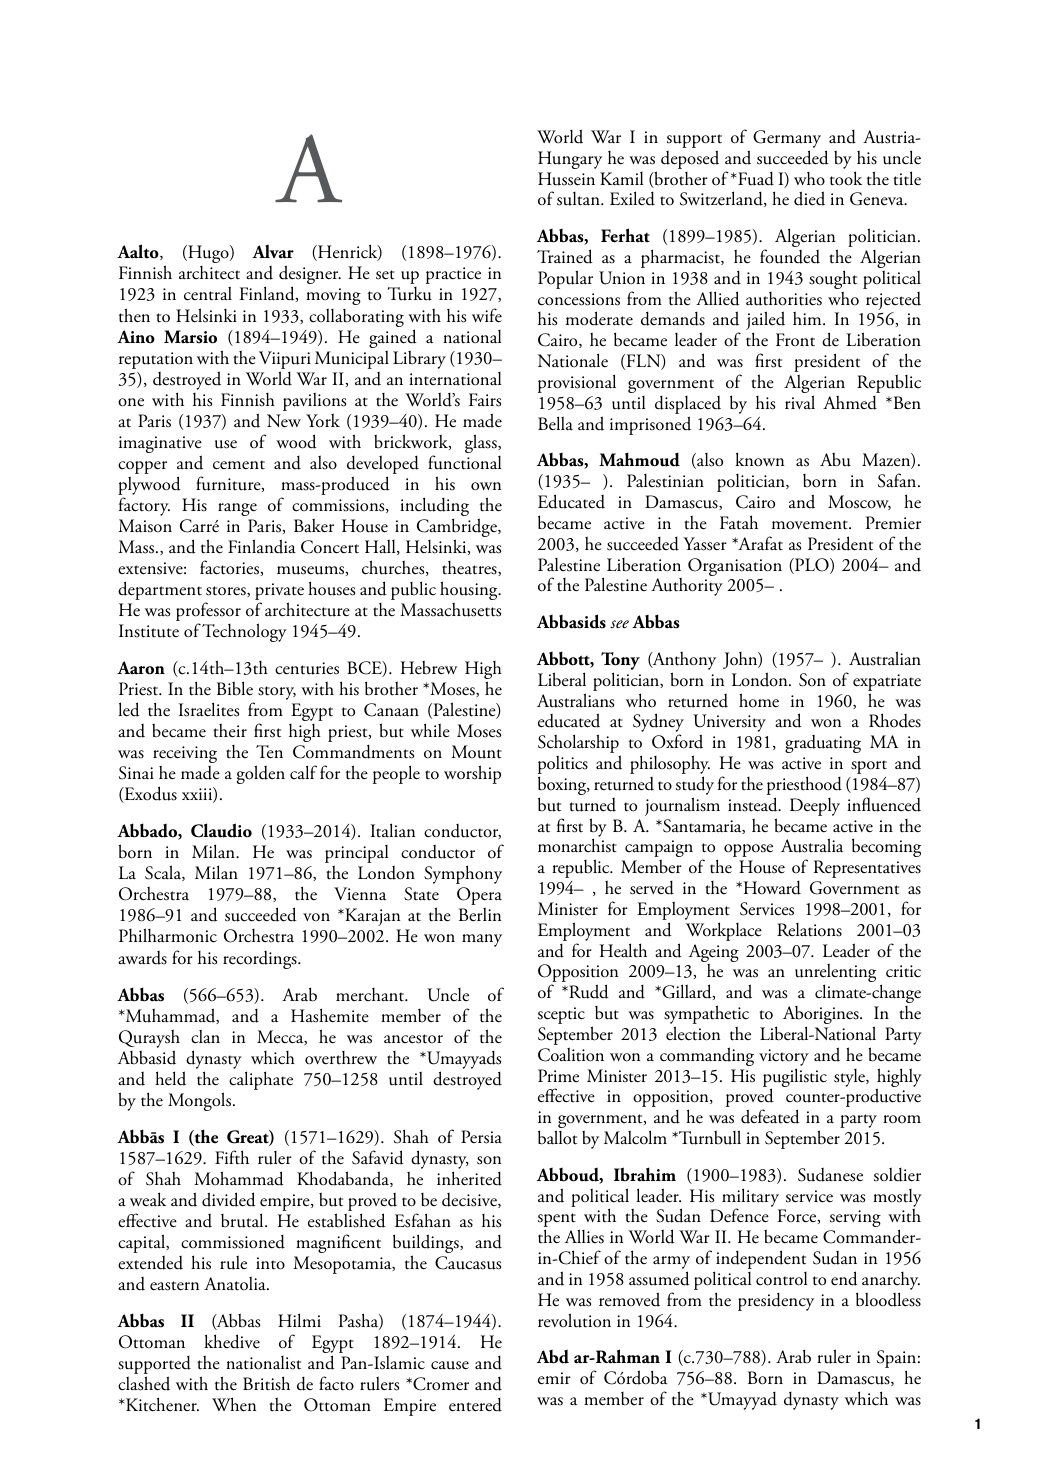 Dictionary of World Biography - ANU Press